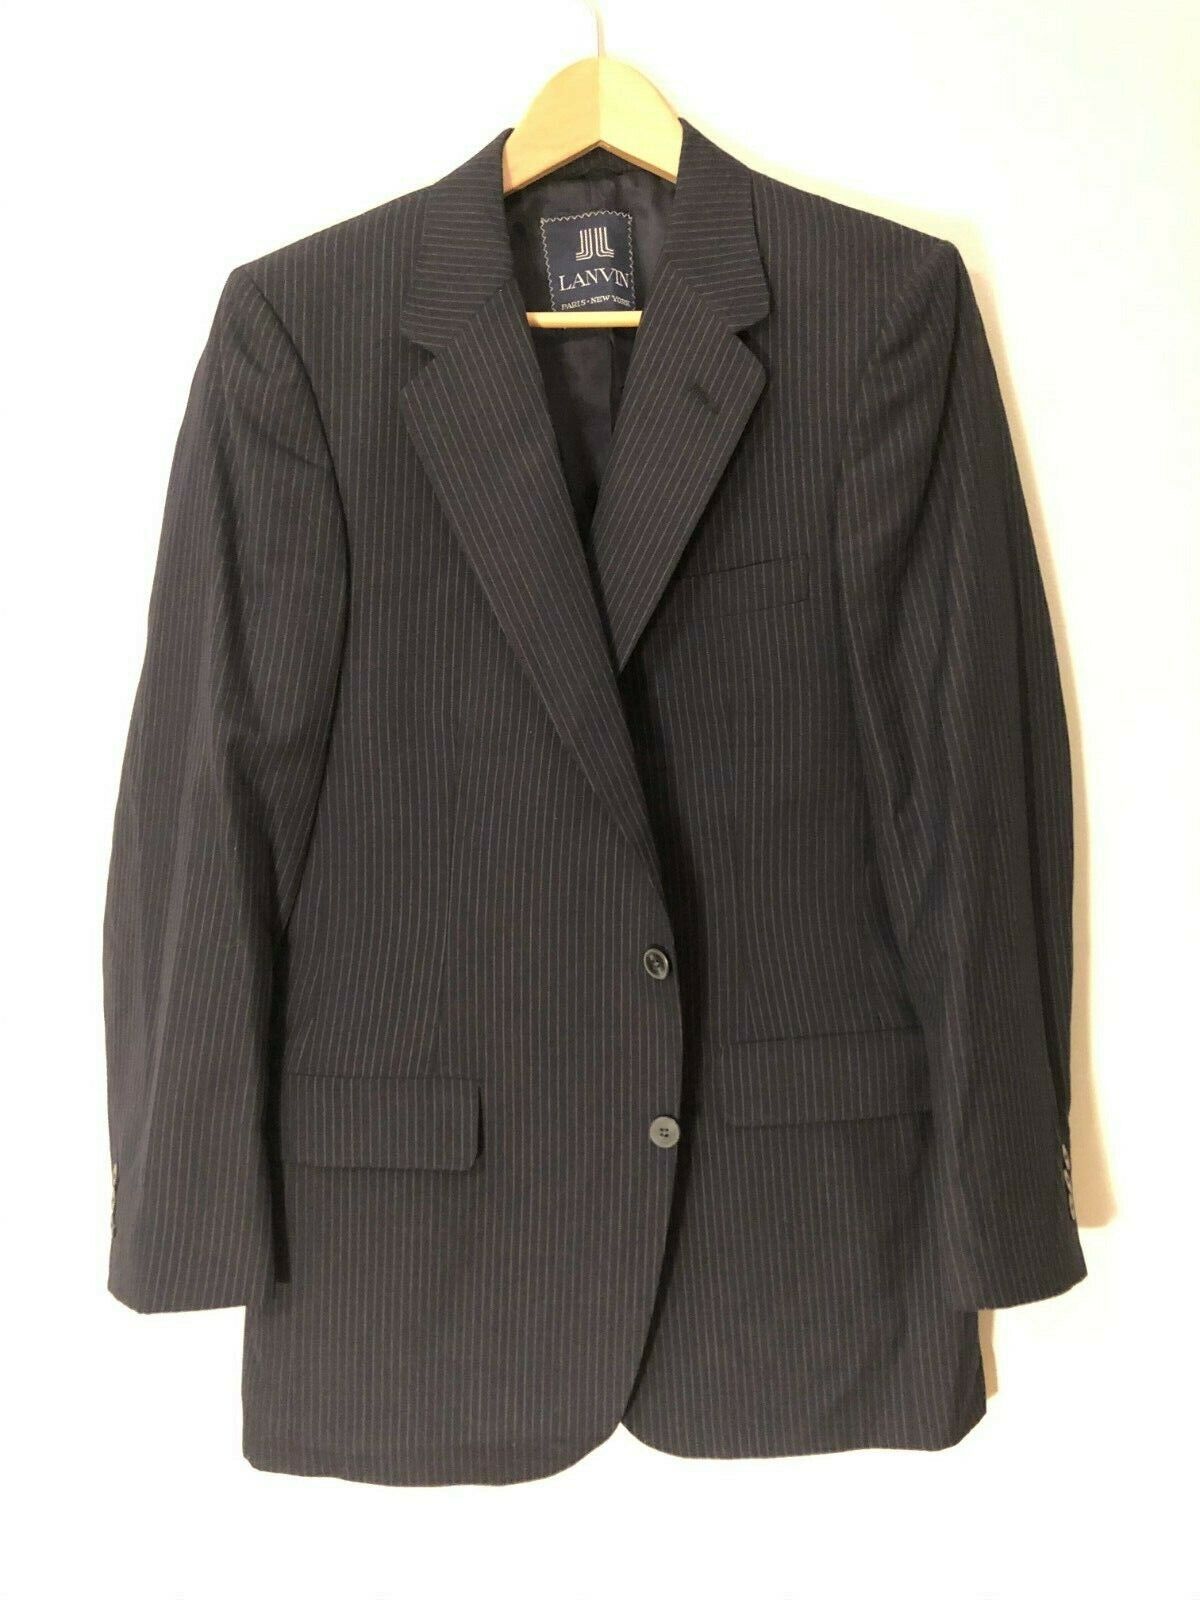 Lanvin Navy Pinstripe 2pc Suit 38R Mens Dress